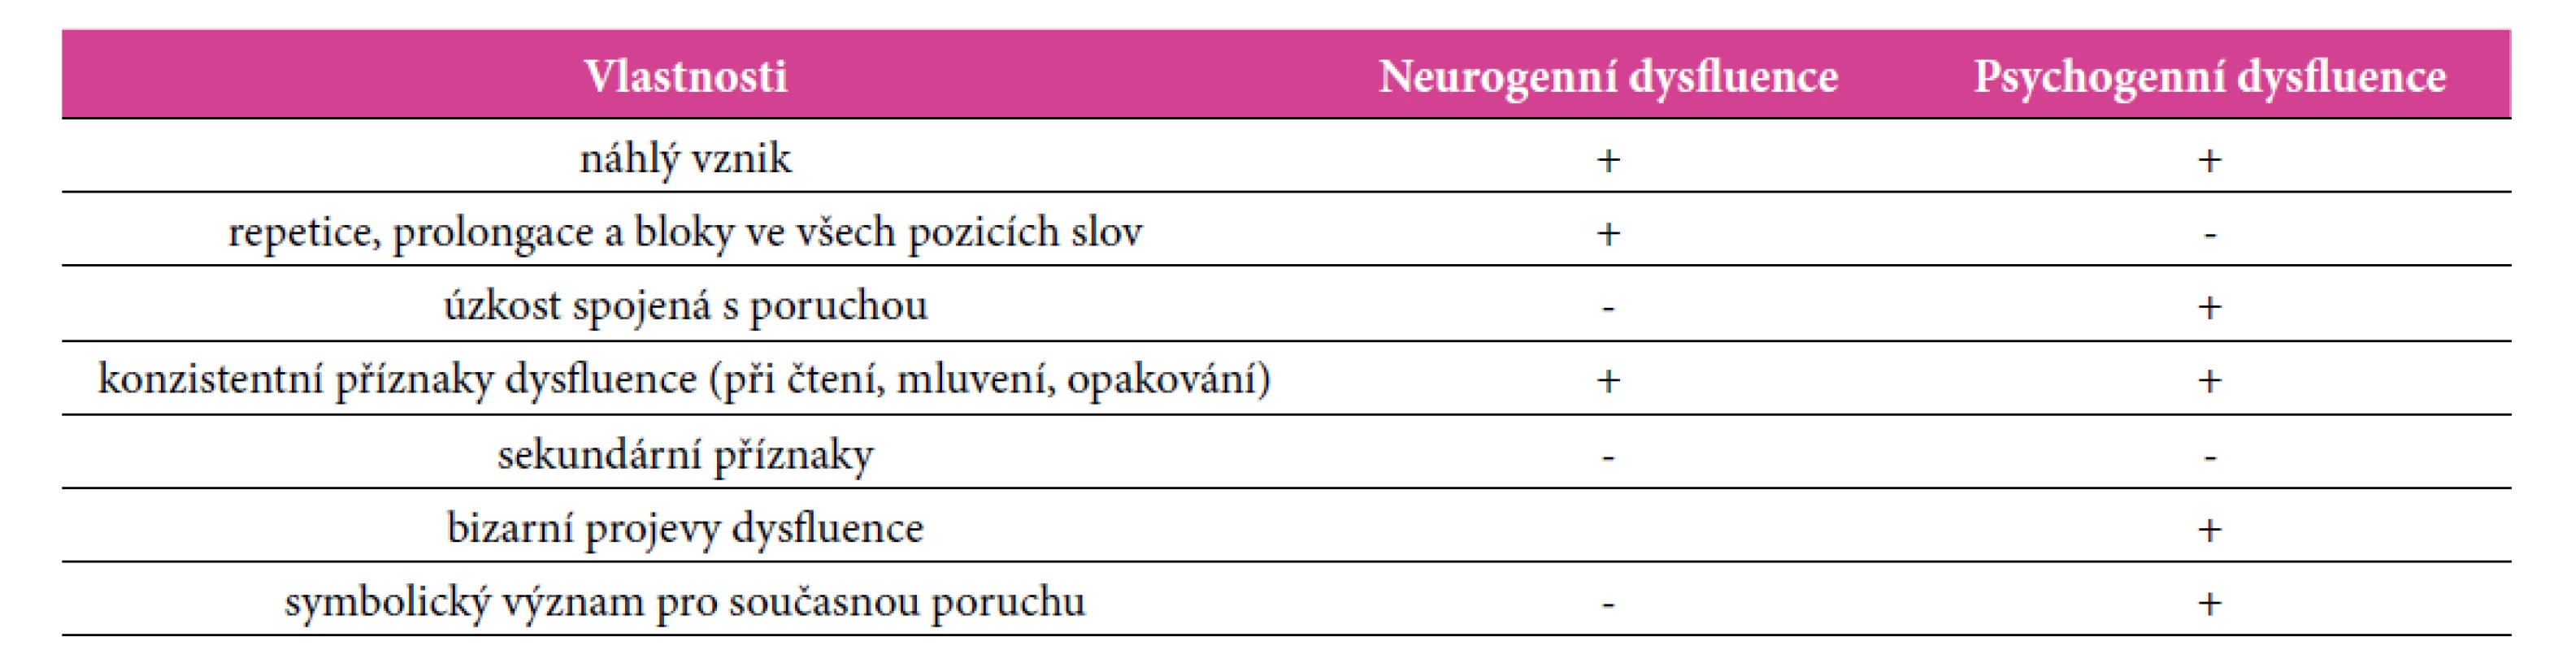 Charakteristika neurogenní versus psychogenní dysfluence (Lundgren et al., 2010)